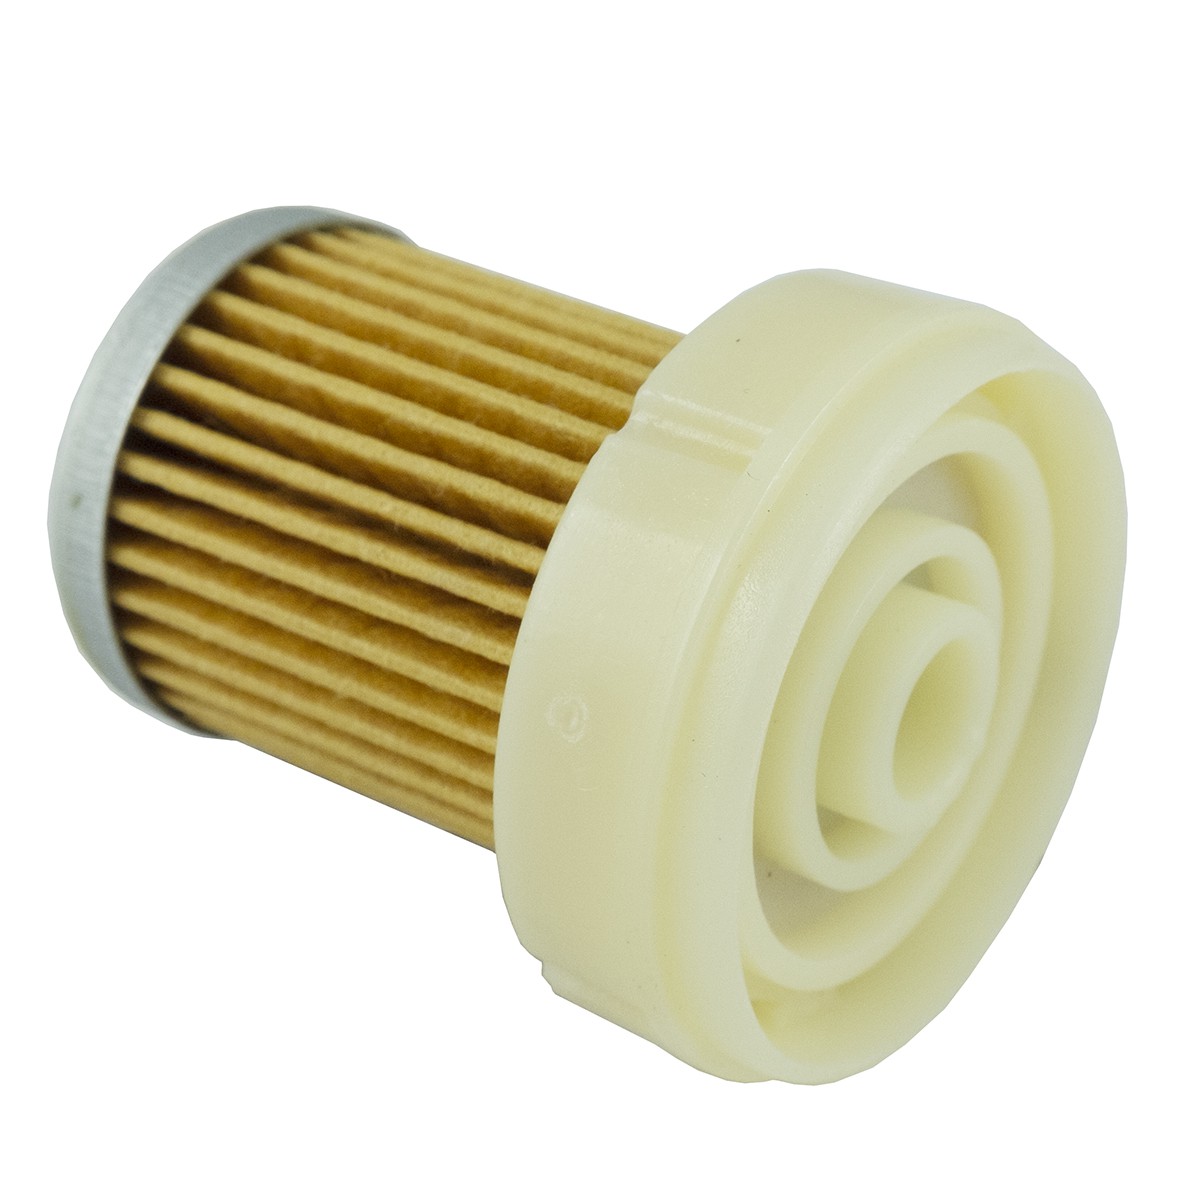 Palivový filter Kubota 35 x 54 mm Kubota 6A320-59930, SN 21599, SK 3205, 5-01-124-29